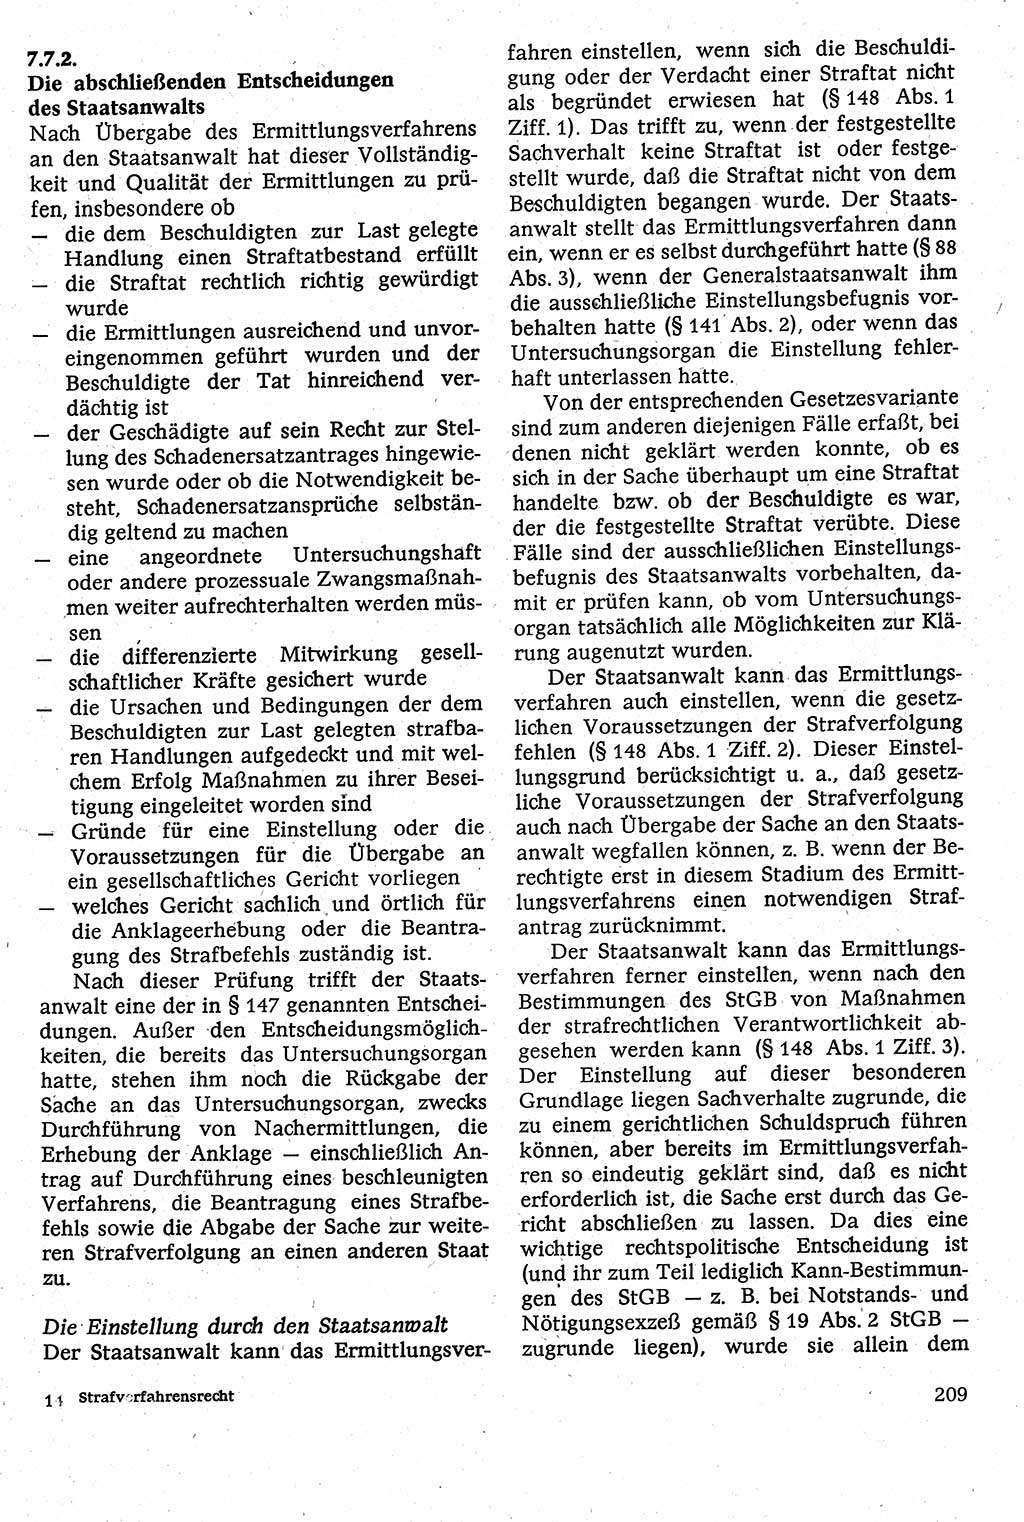 Strafverfahrensrecht [Deutsche Demokratische Republik (DDR)], Lehrbuch 1982, Seite 209 (Strafverf.-R. DDR Lb. 1982, S. 209)